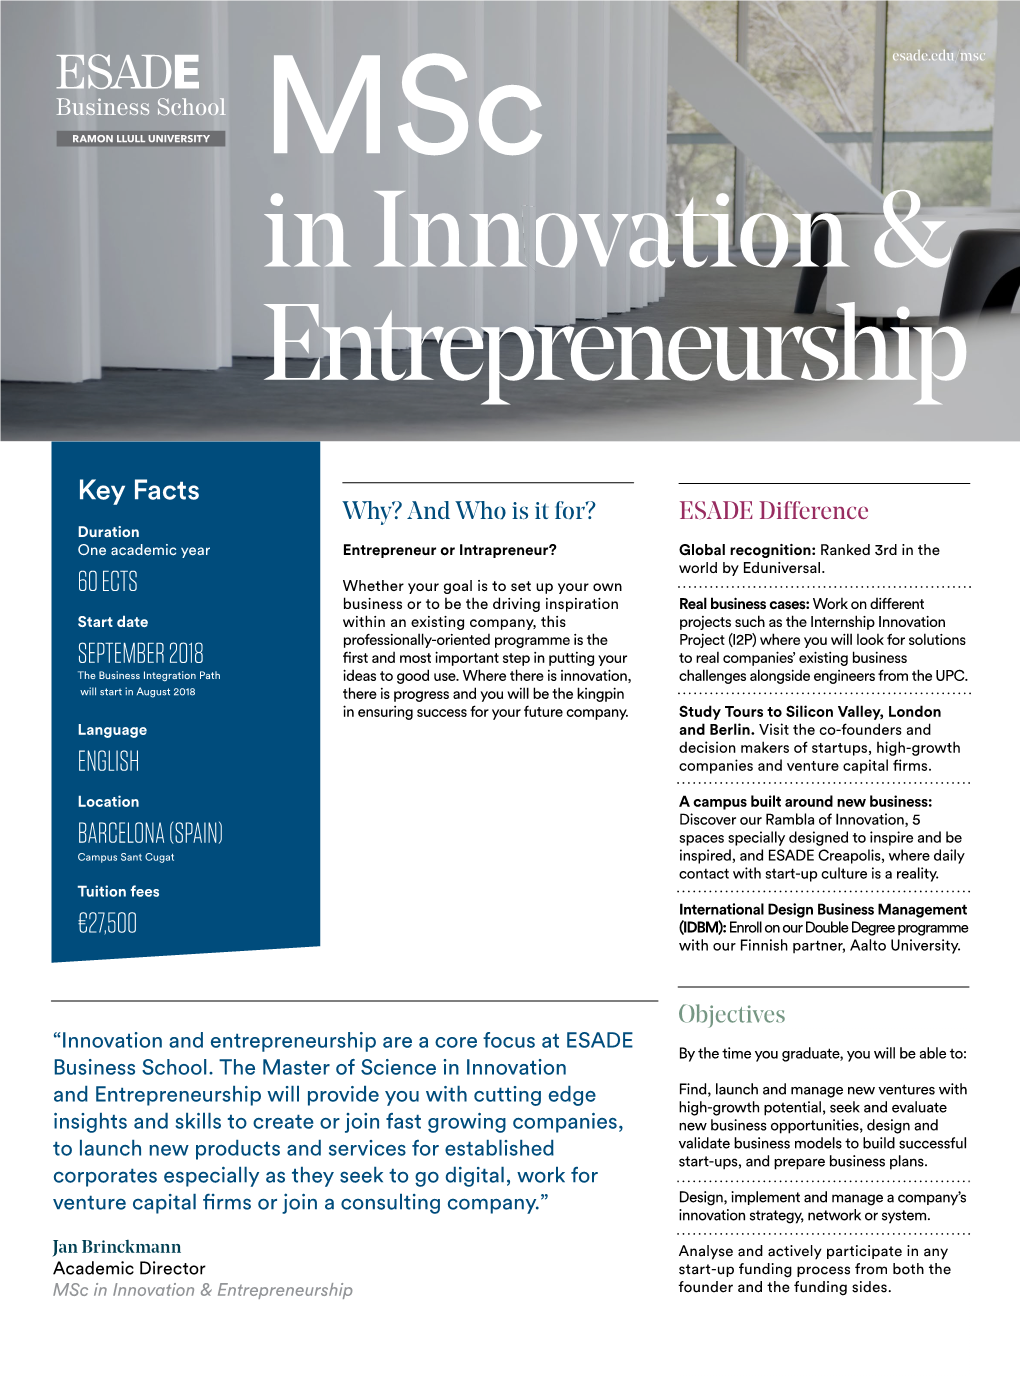 In Innovation & Entrepreneurship